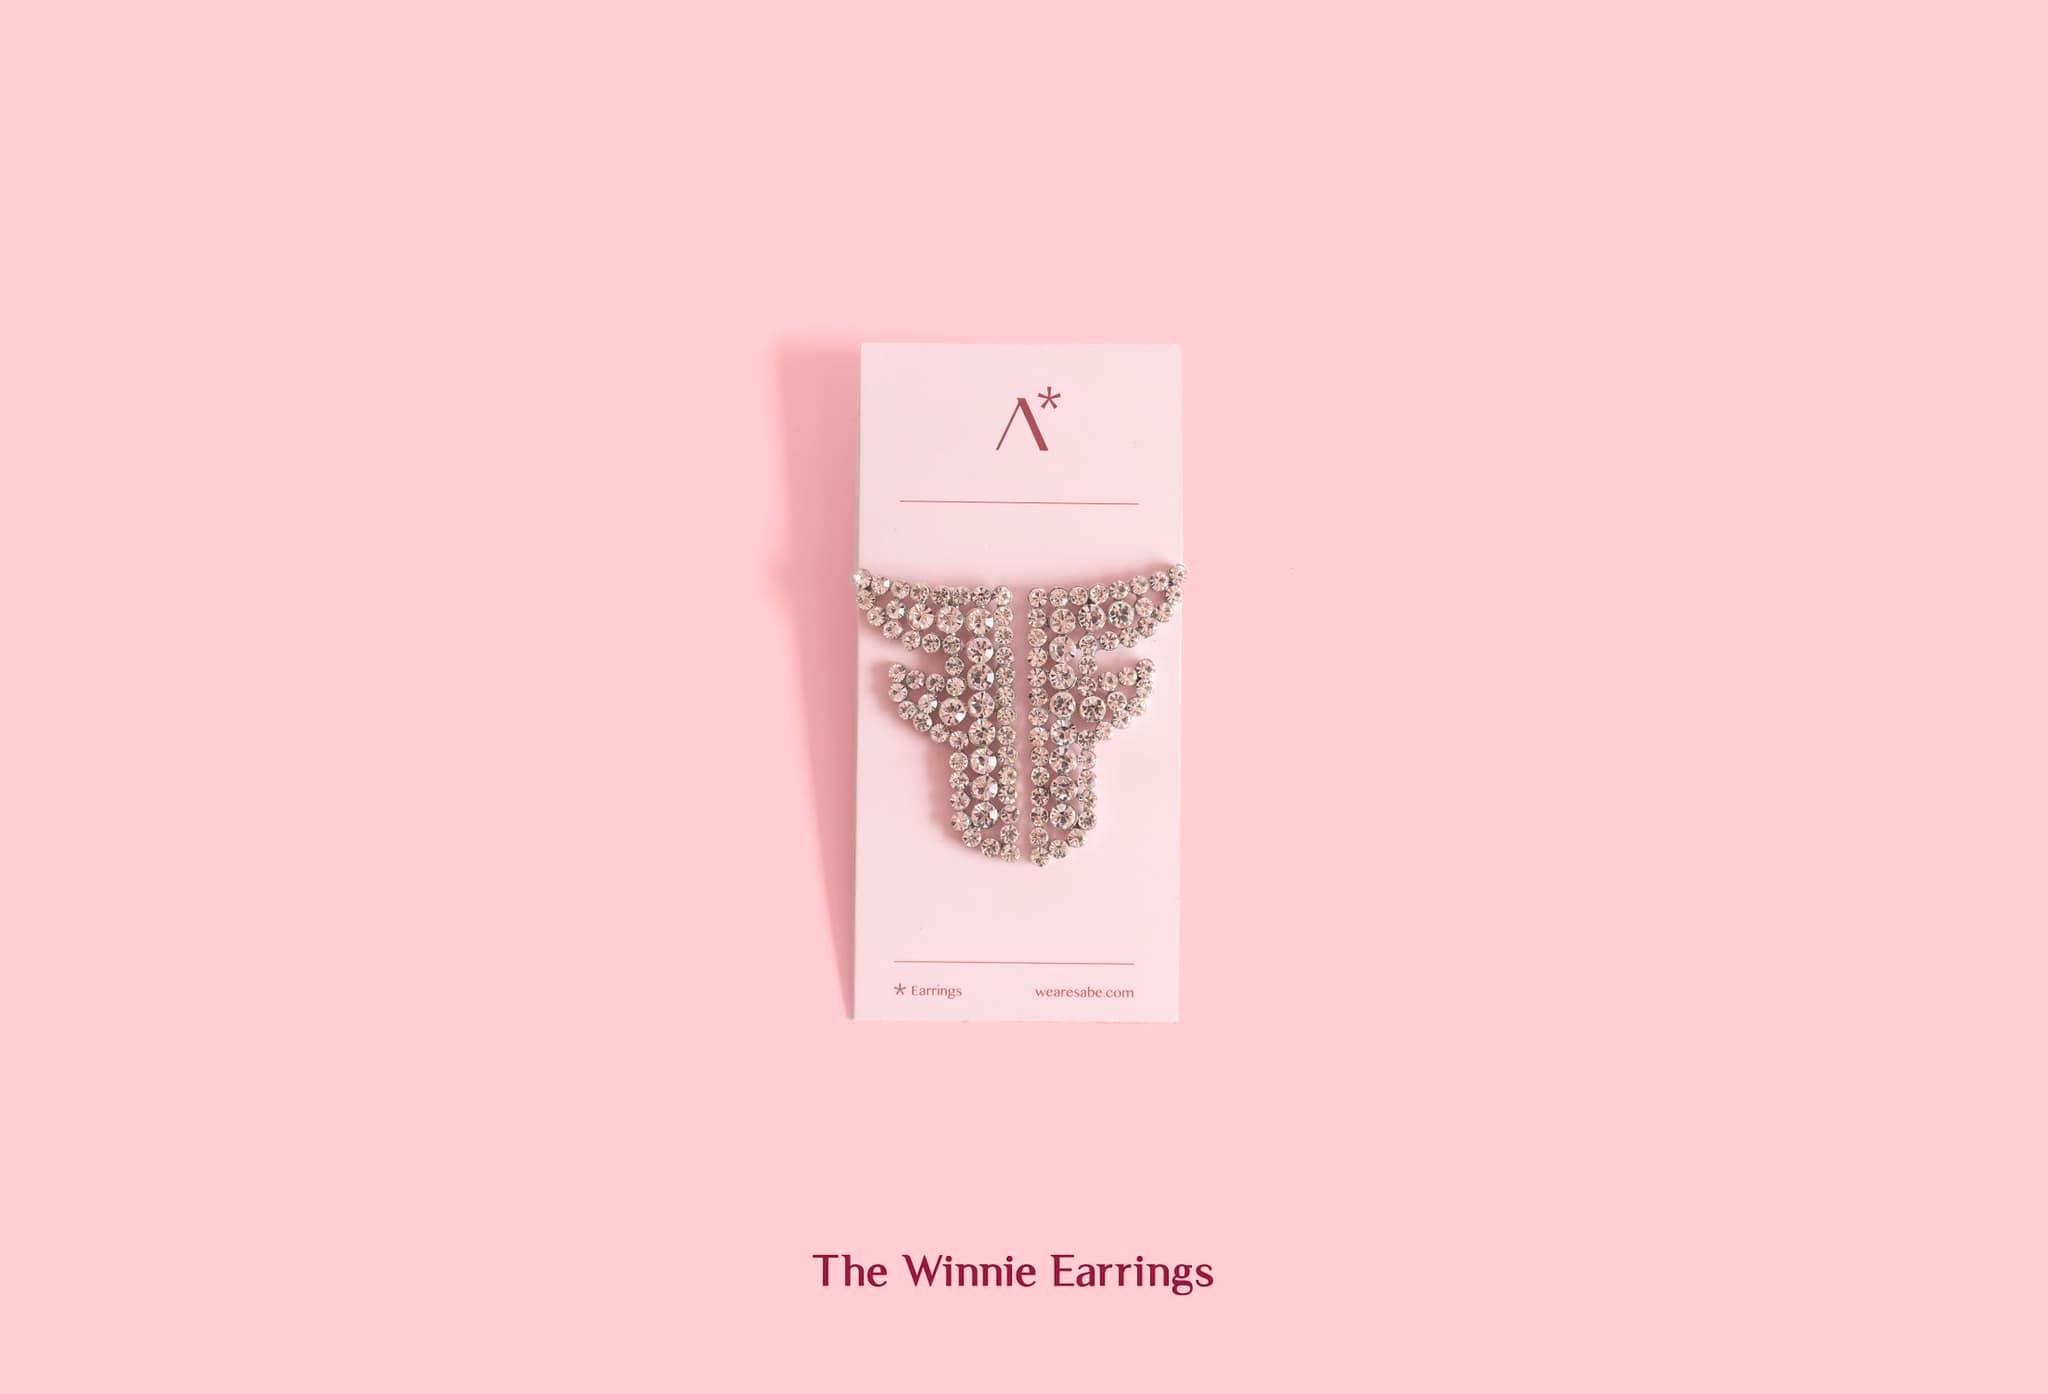 The Winnie Earrings